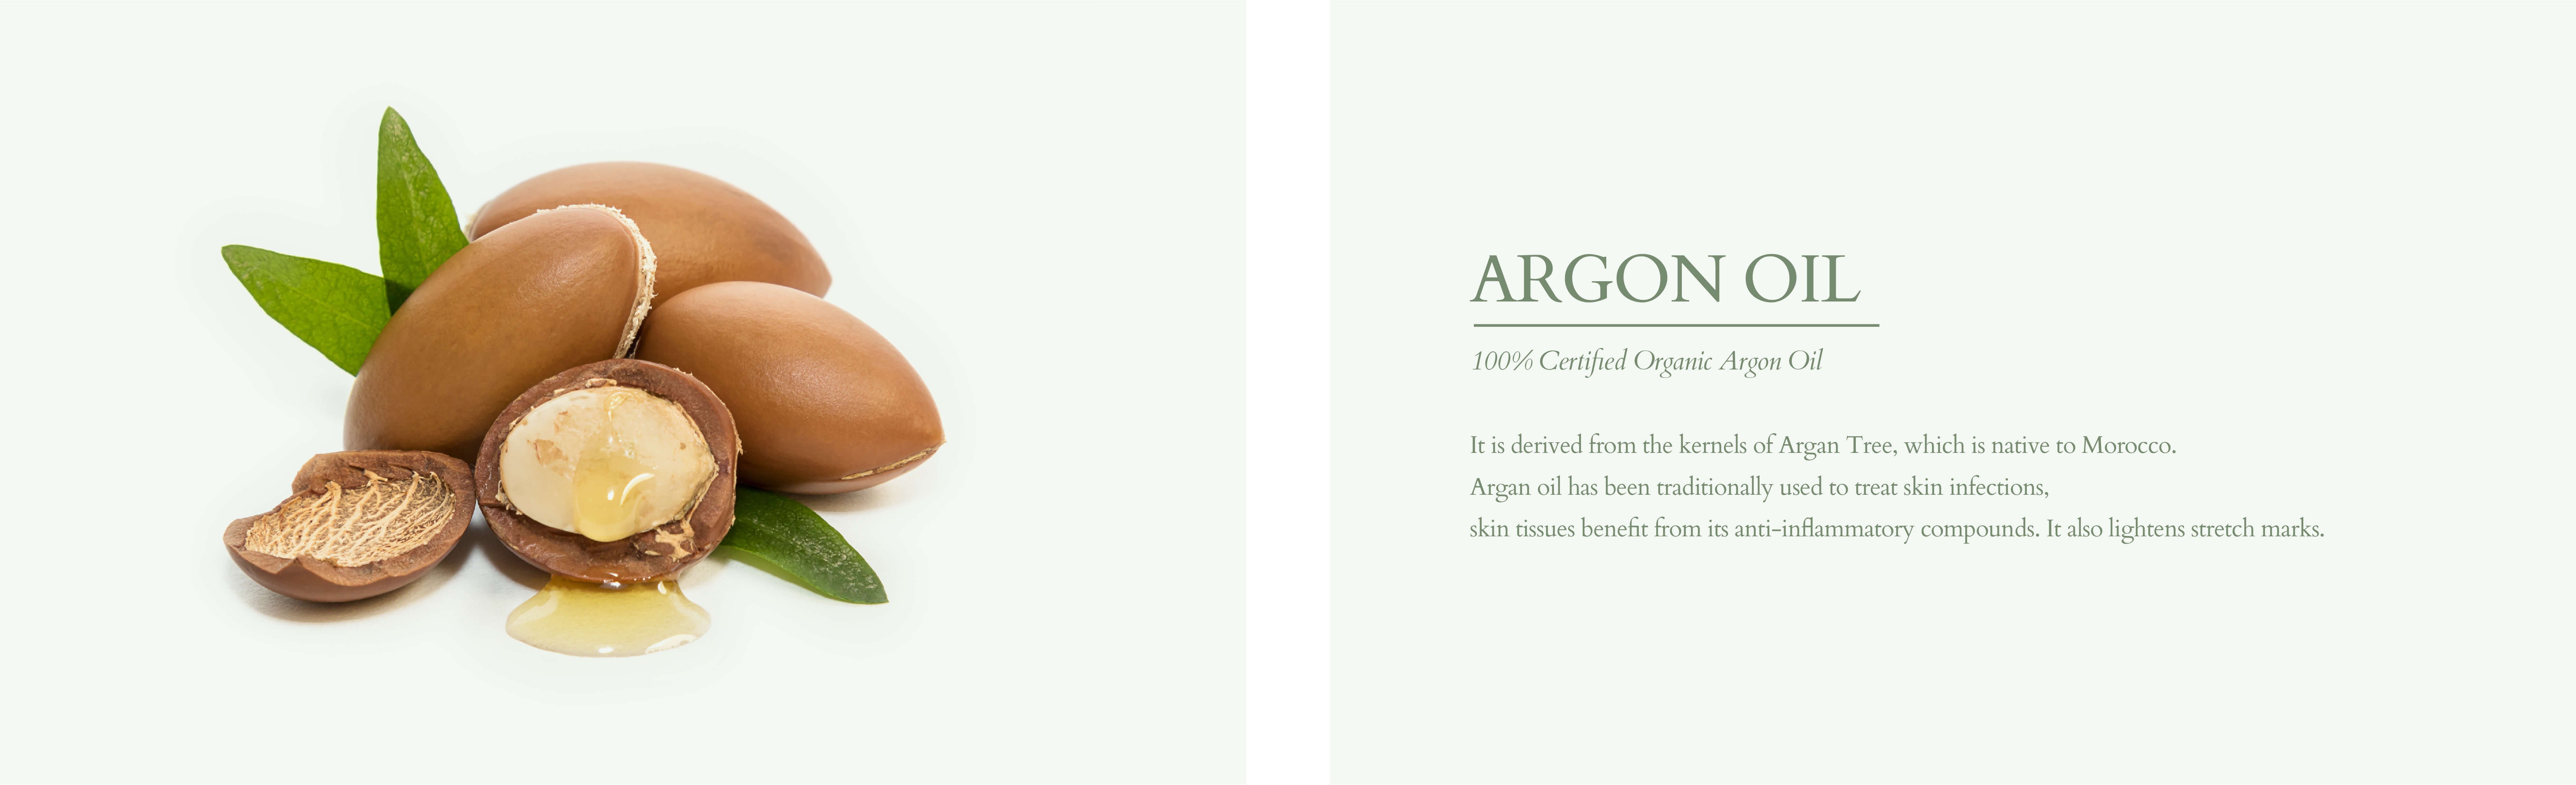 Organic argon oil for skin